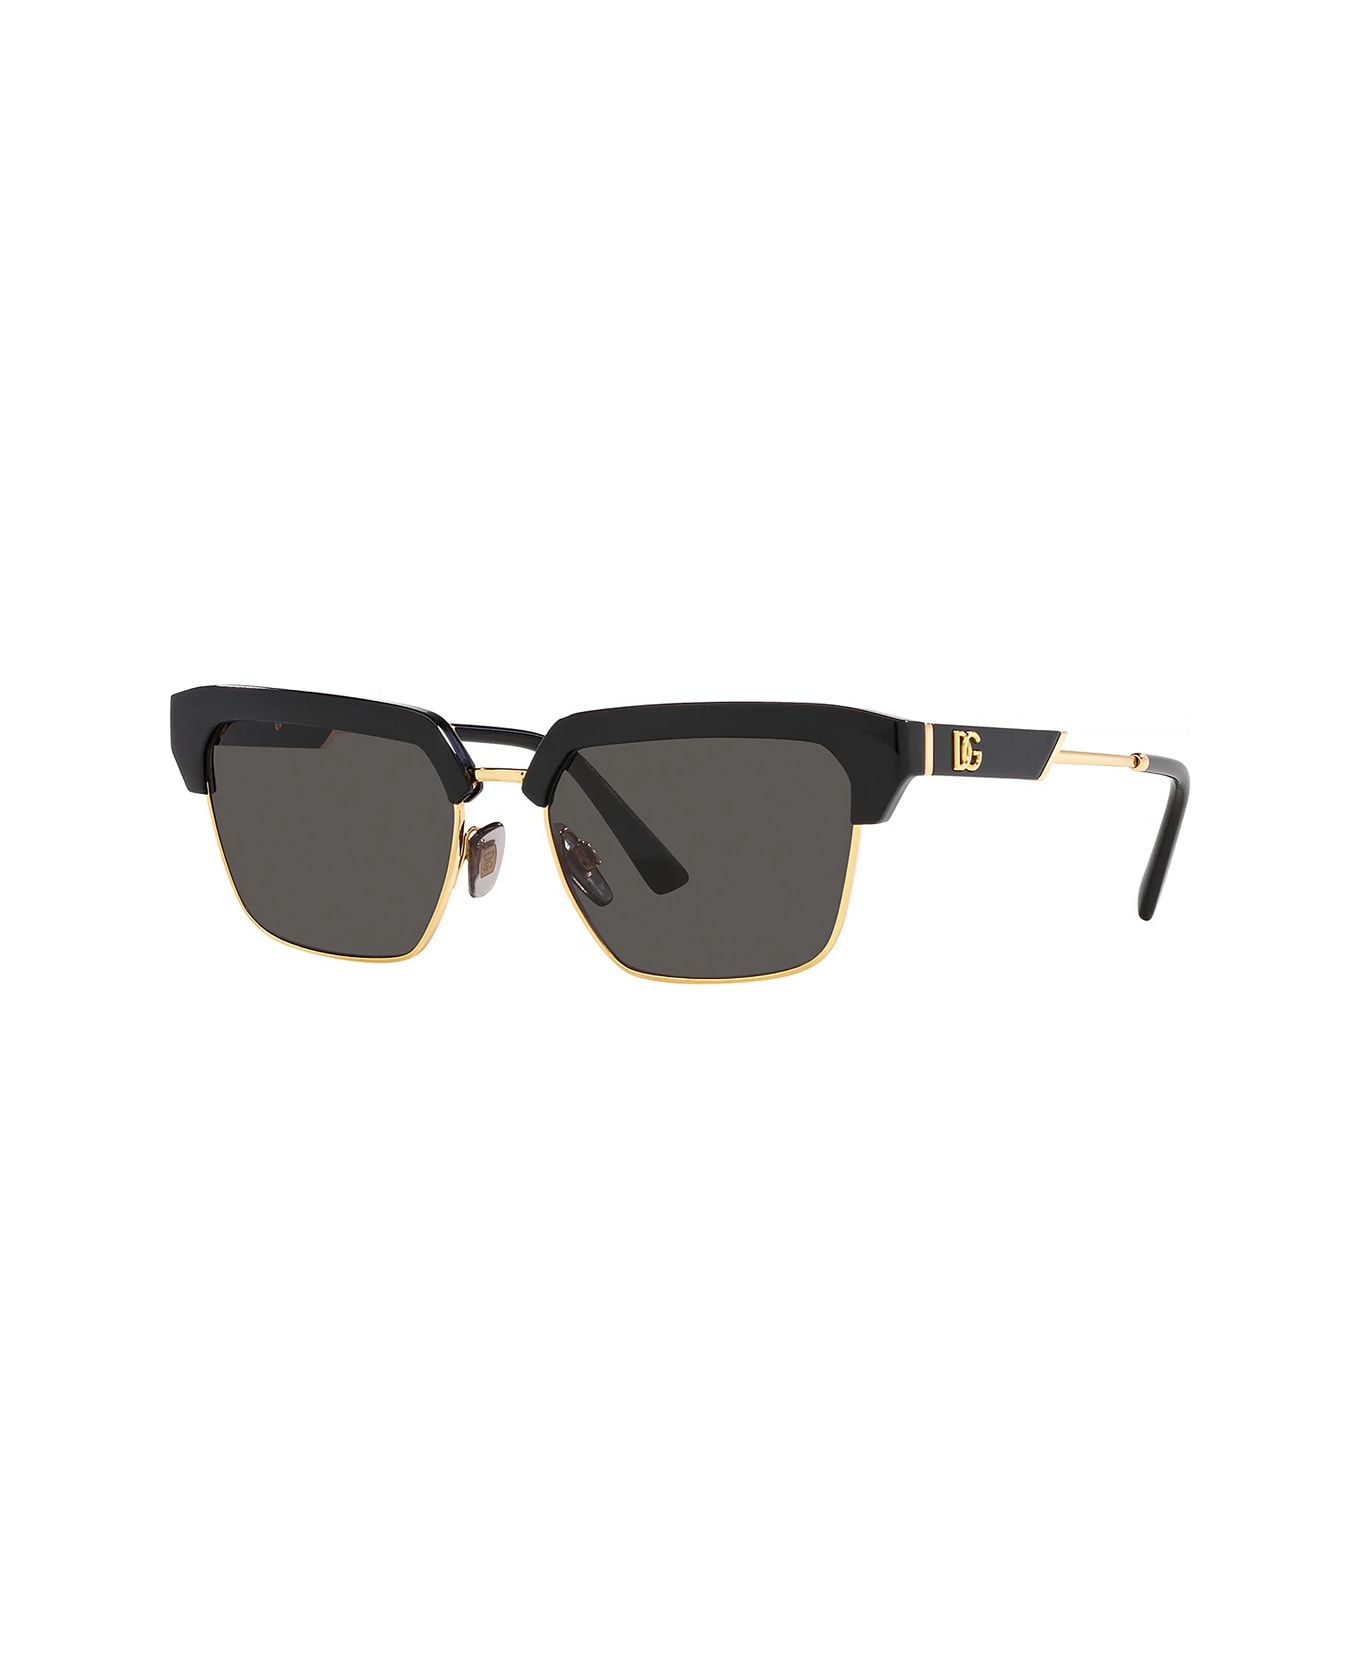 goodr rip augustus gloop zadie sunglasses Eyewear Dg6185 501/87 zadie Sunglasses - Nero